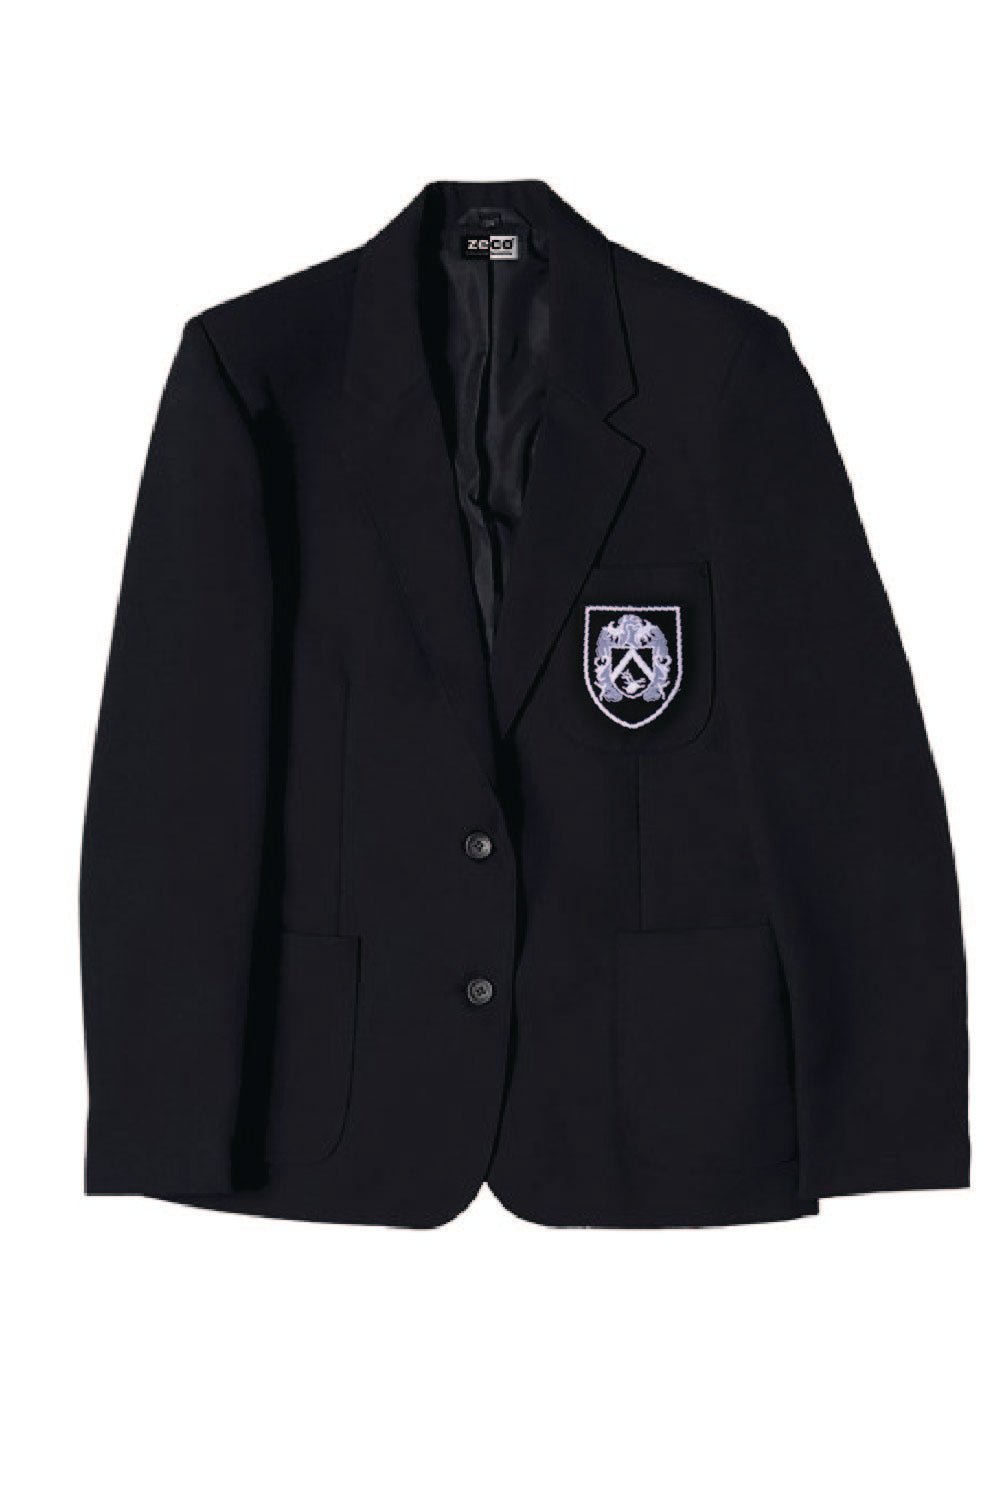 Gable Hall Boys School Blazer - Uniformwise Schoolwear